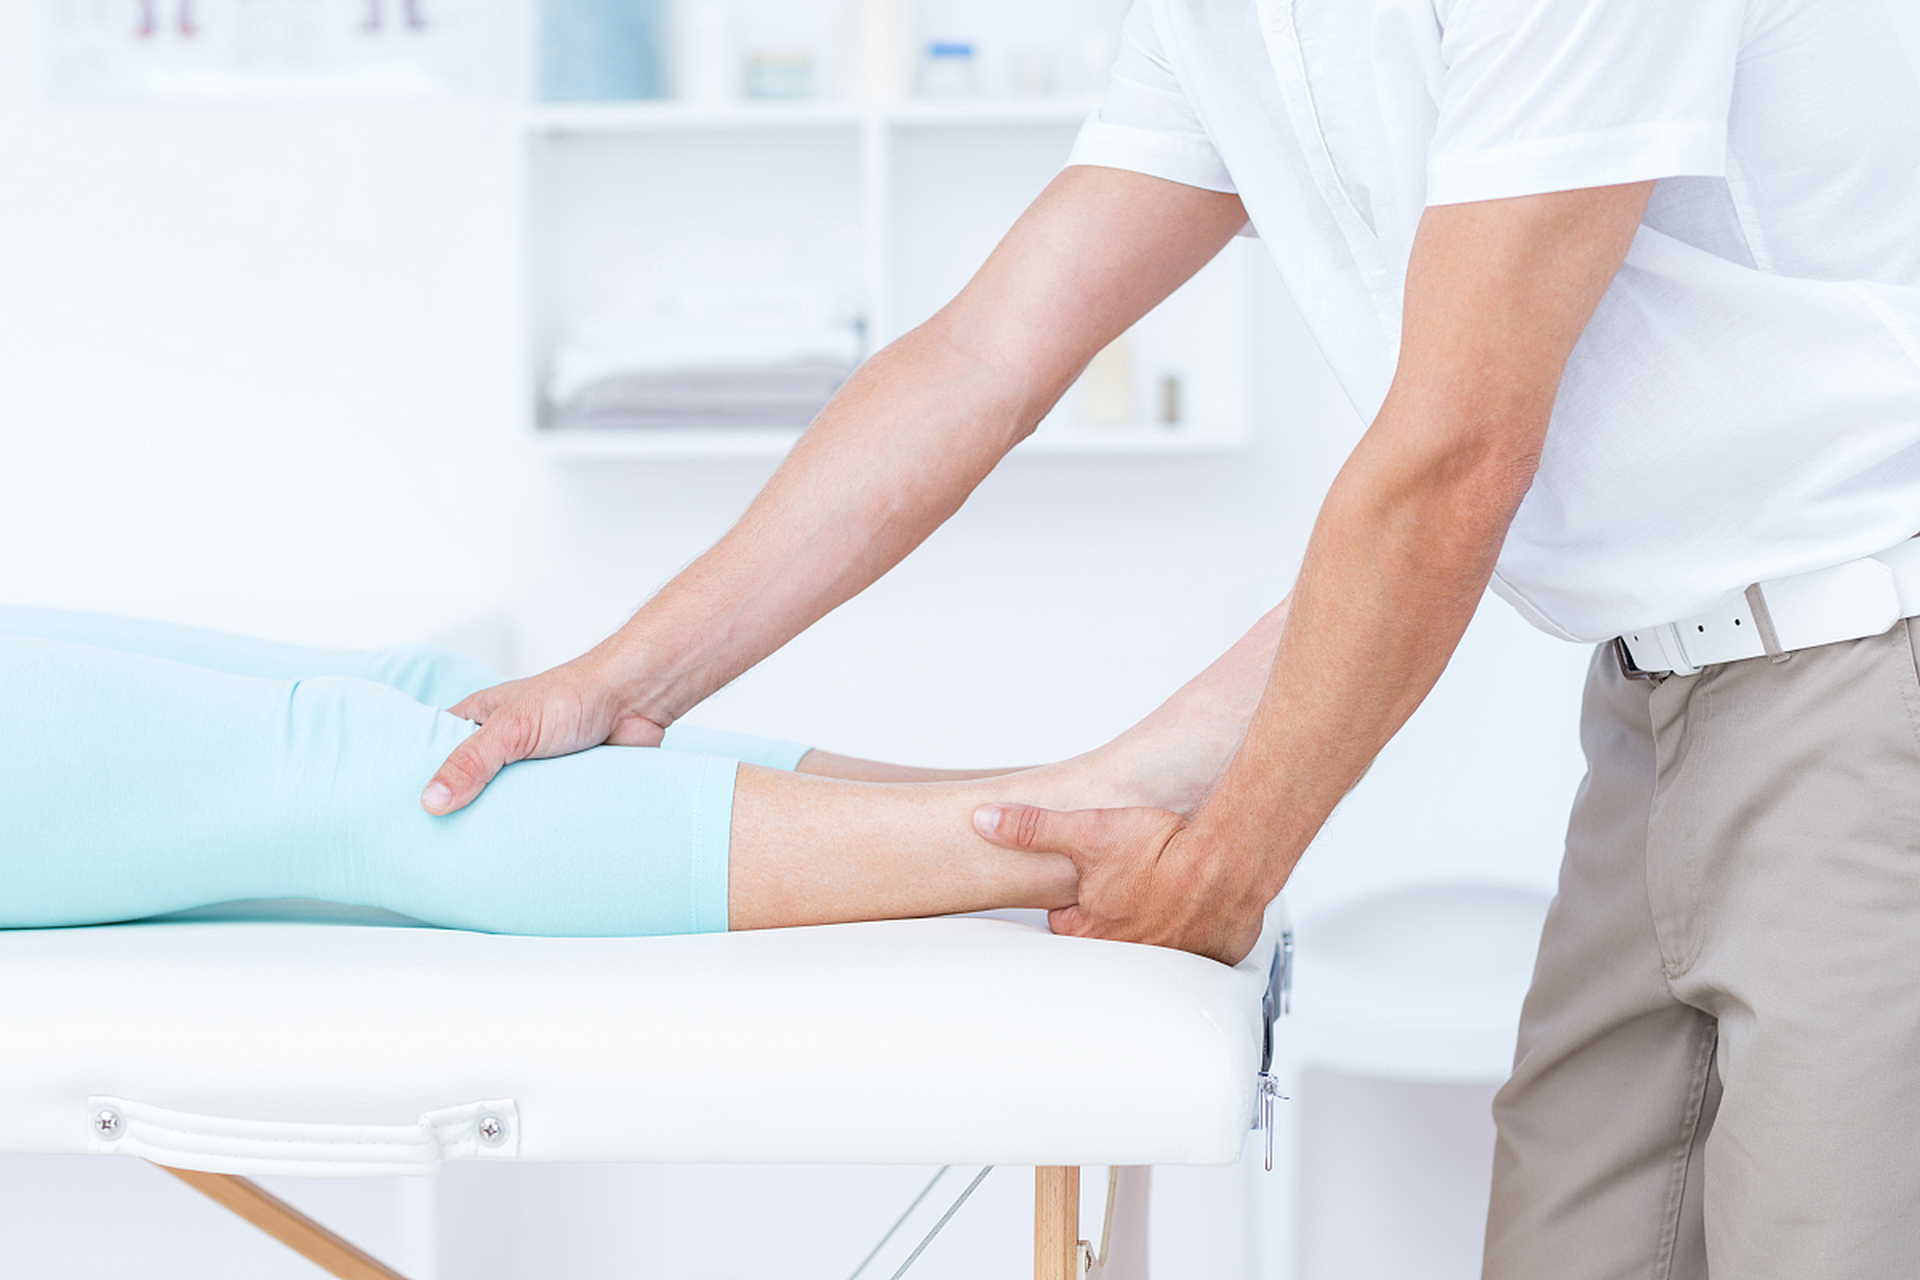 拍打膝关节是一种常见的康复运动,它可以帮助提高膝关节的灵活性和